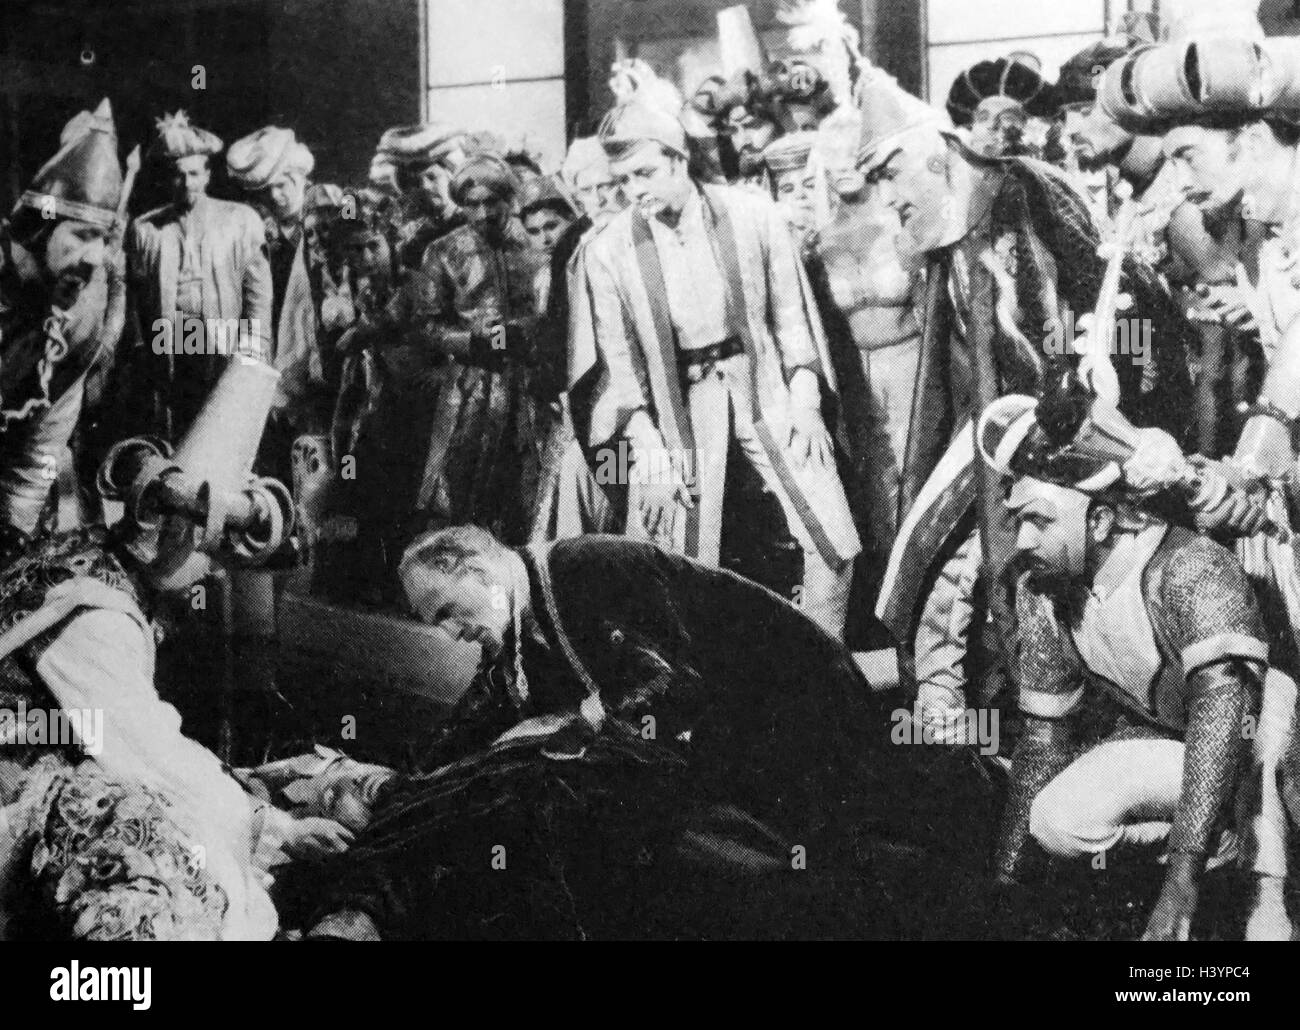 Film still aus "Kismet" mit Howard Keel, Ann Blyth und Dolores Gray. Vom 20. Jahrhundert Stockfoto